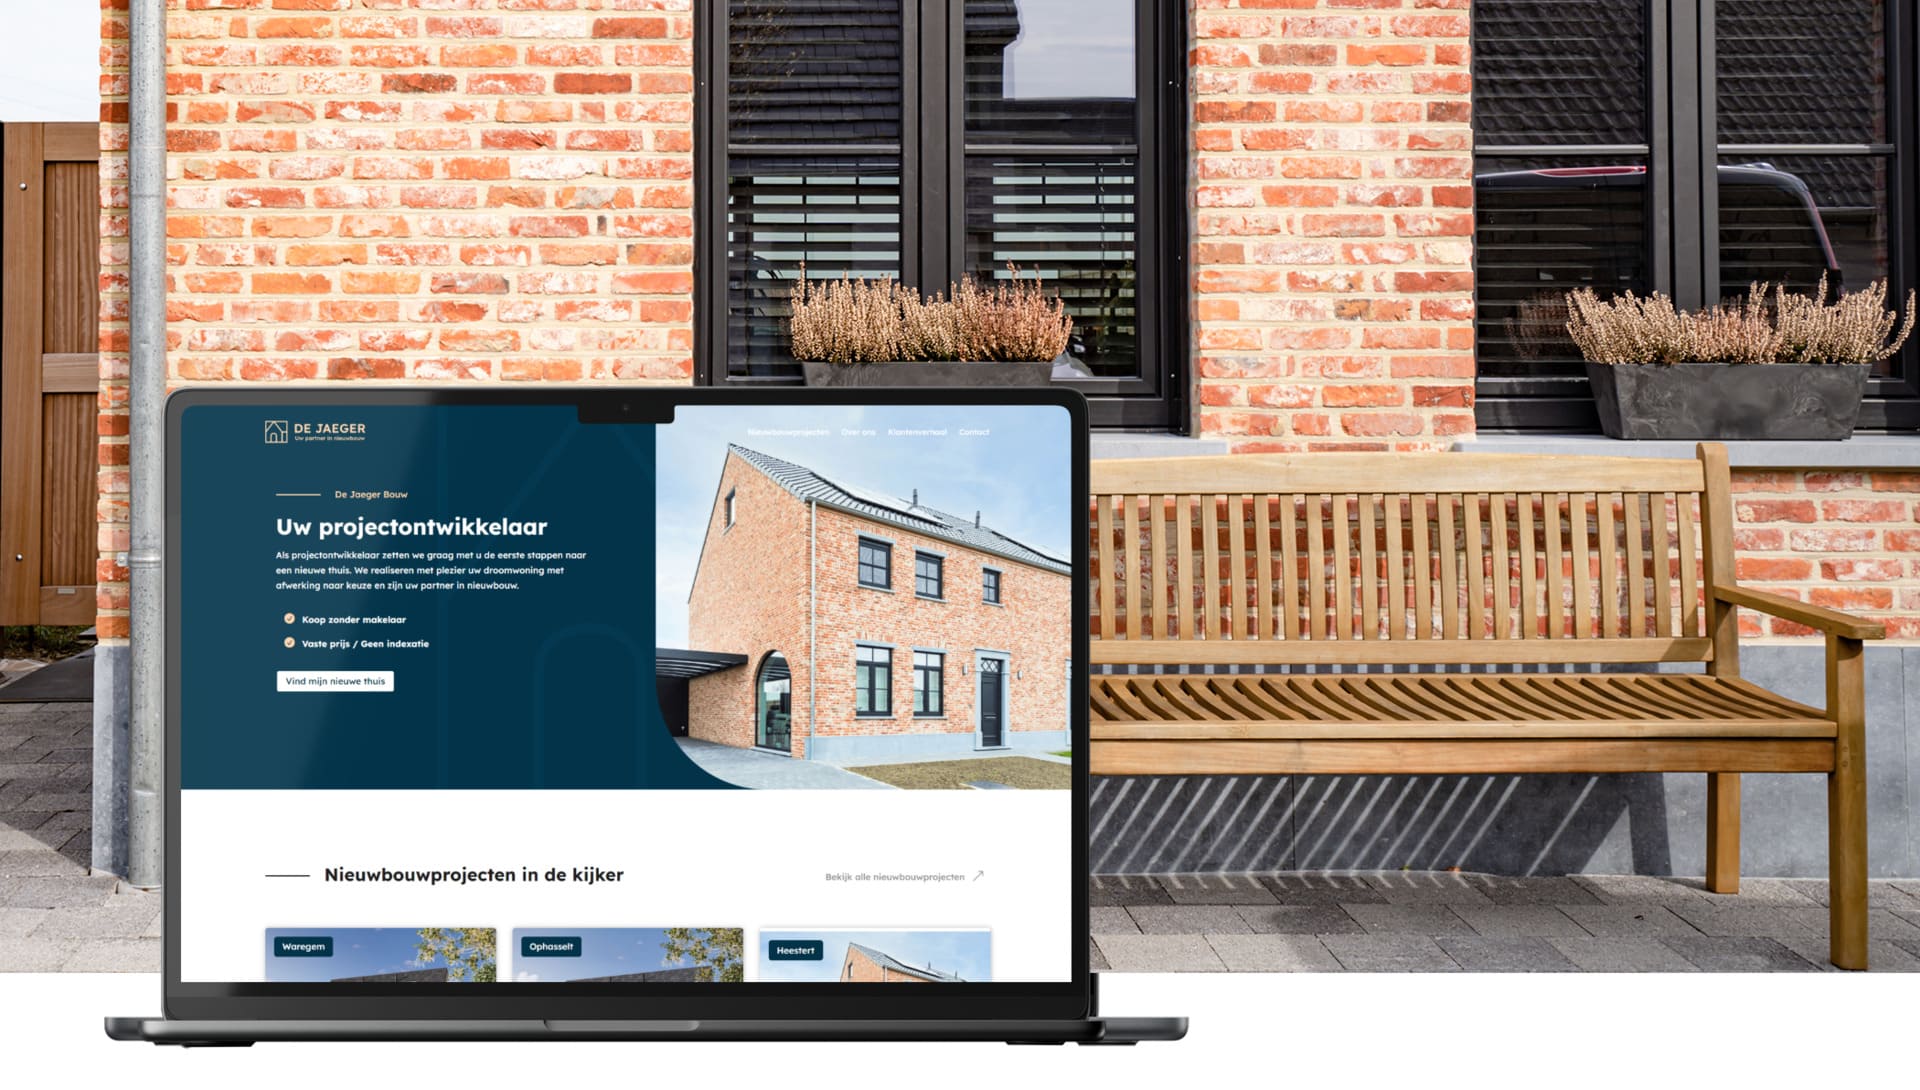 Online Design De Jaeger Bouw Website